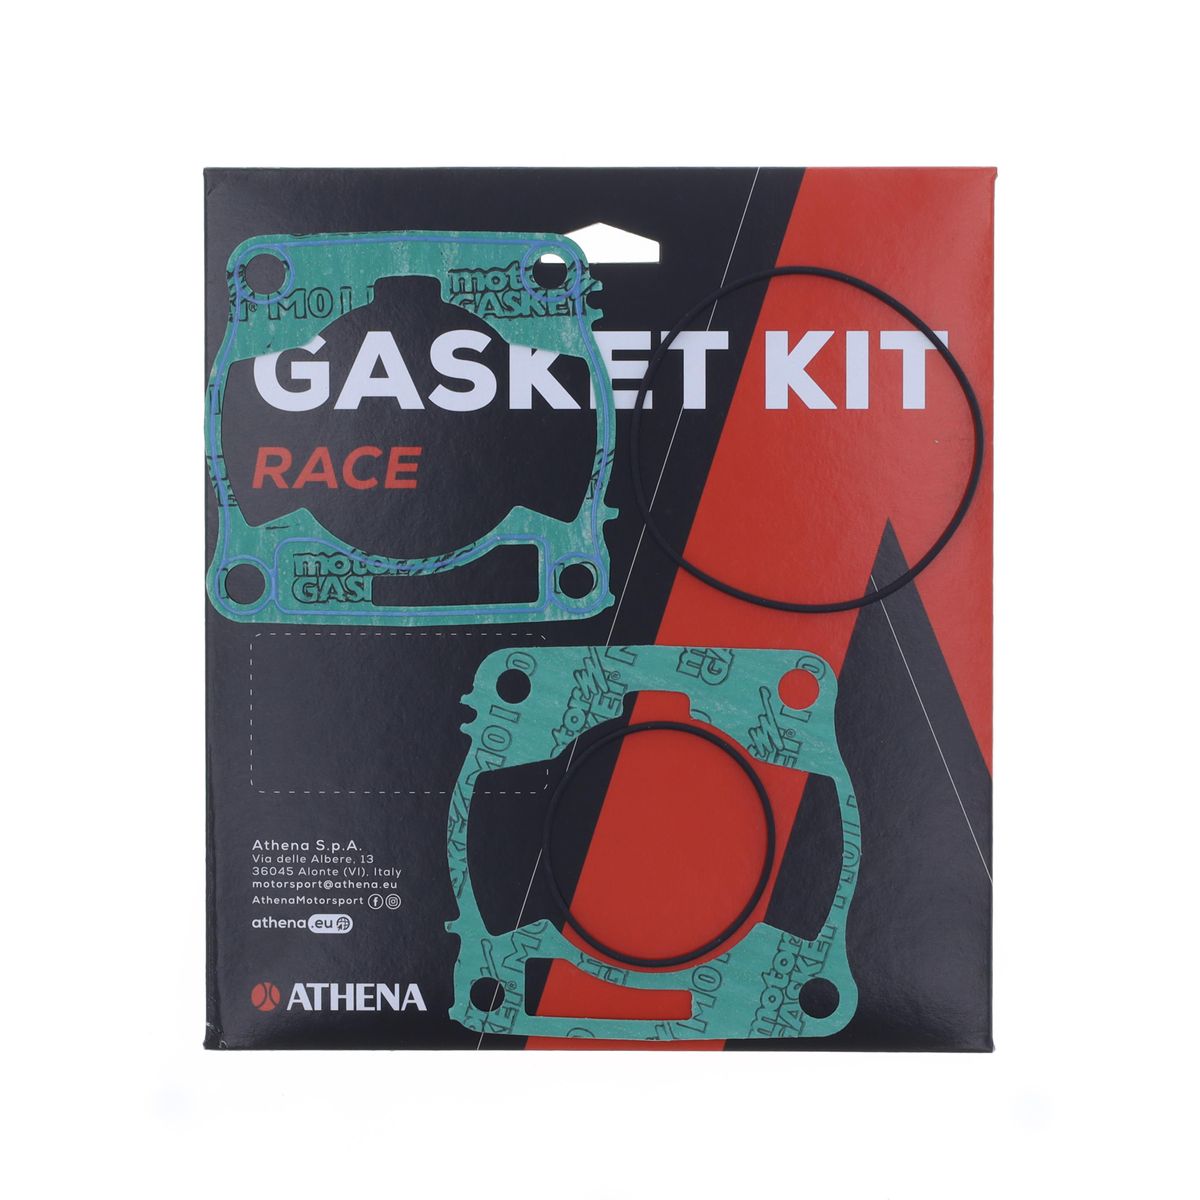 Obrázek produktu Race gasket kit ATHENA R4856-199